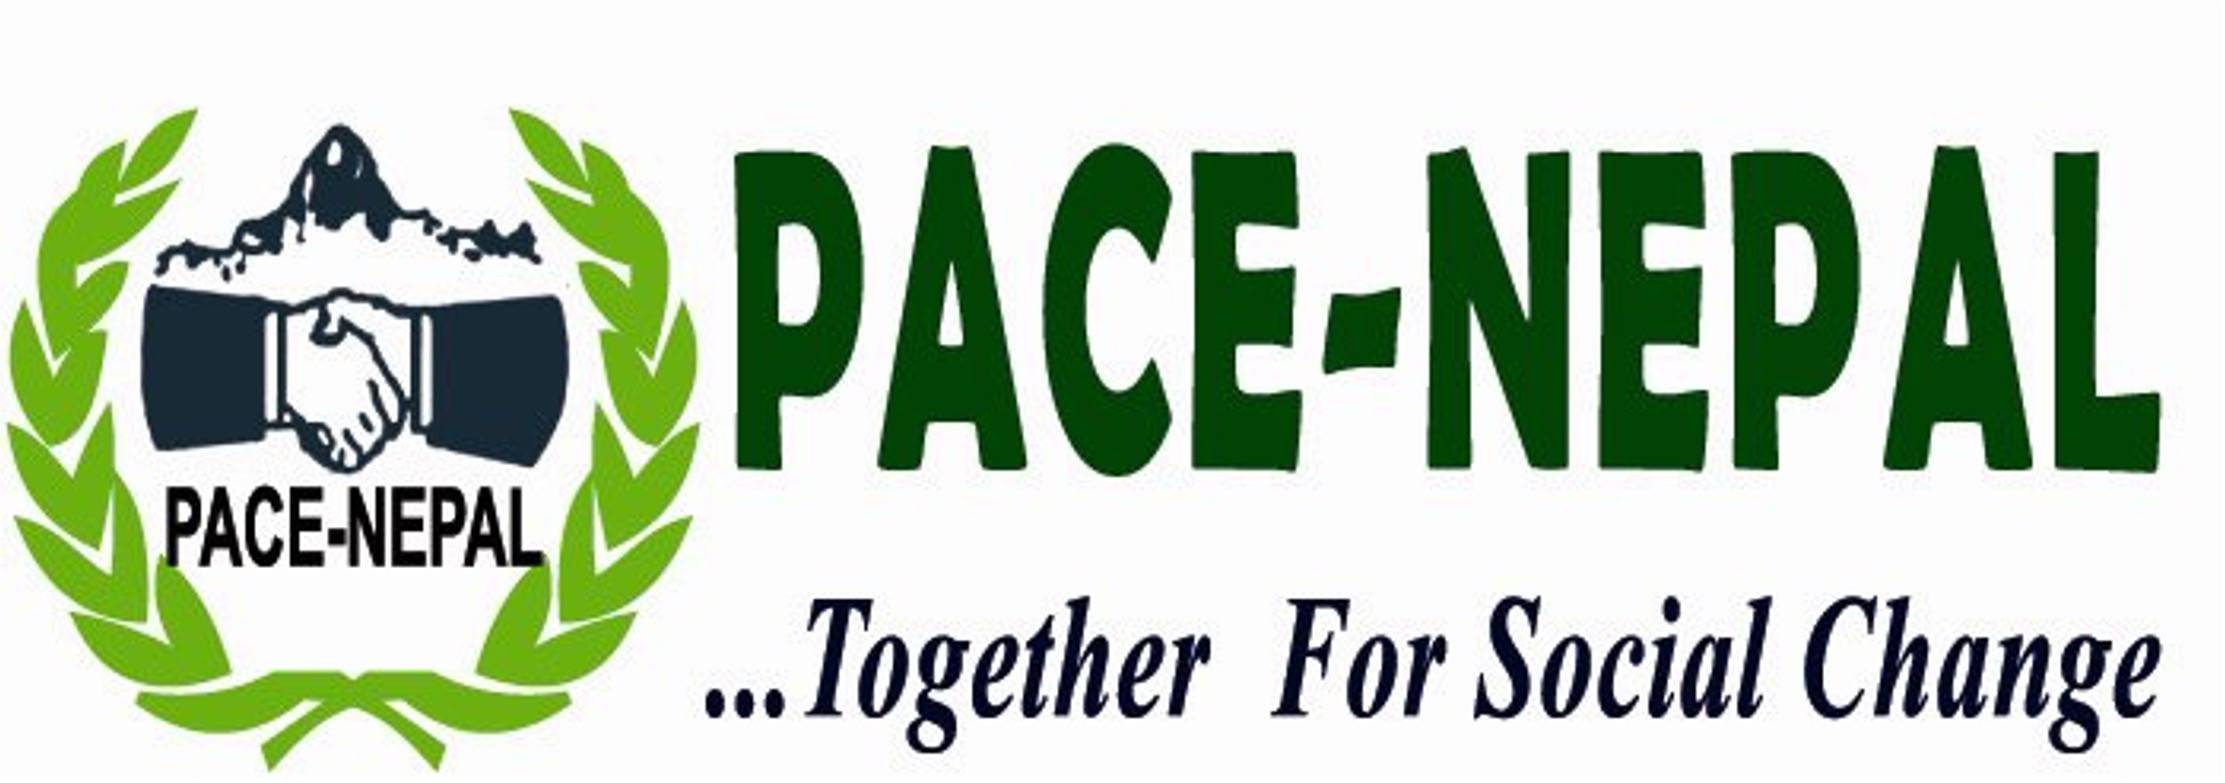 pace-nepal-logo-new